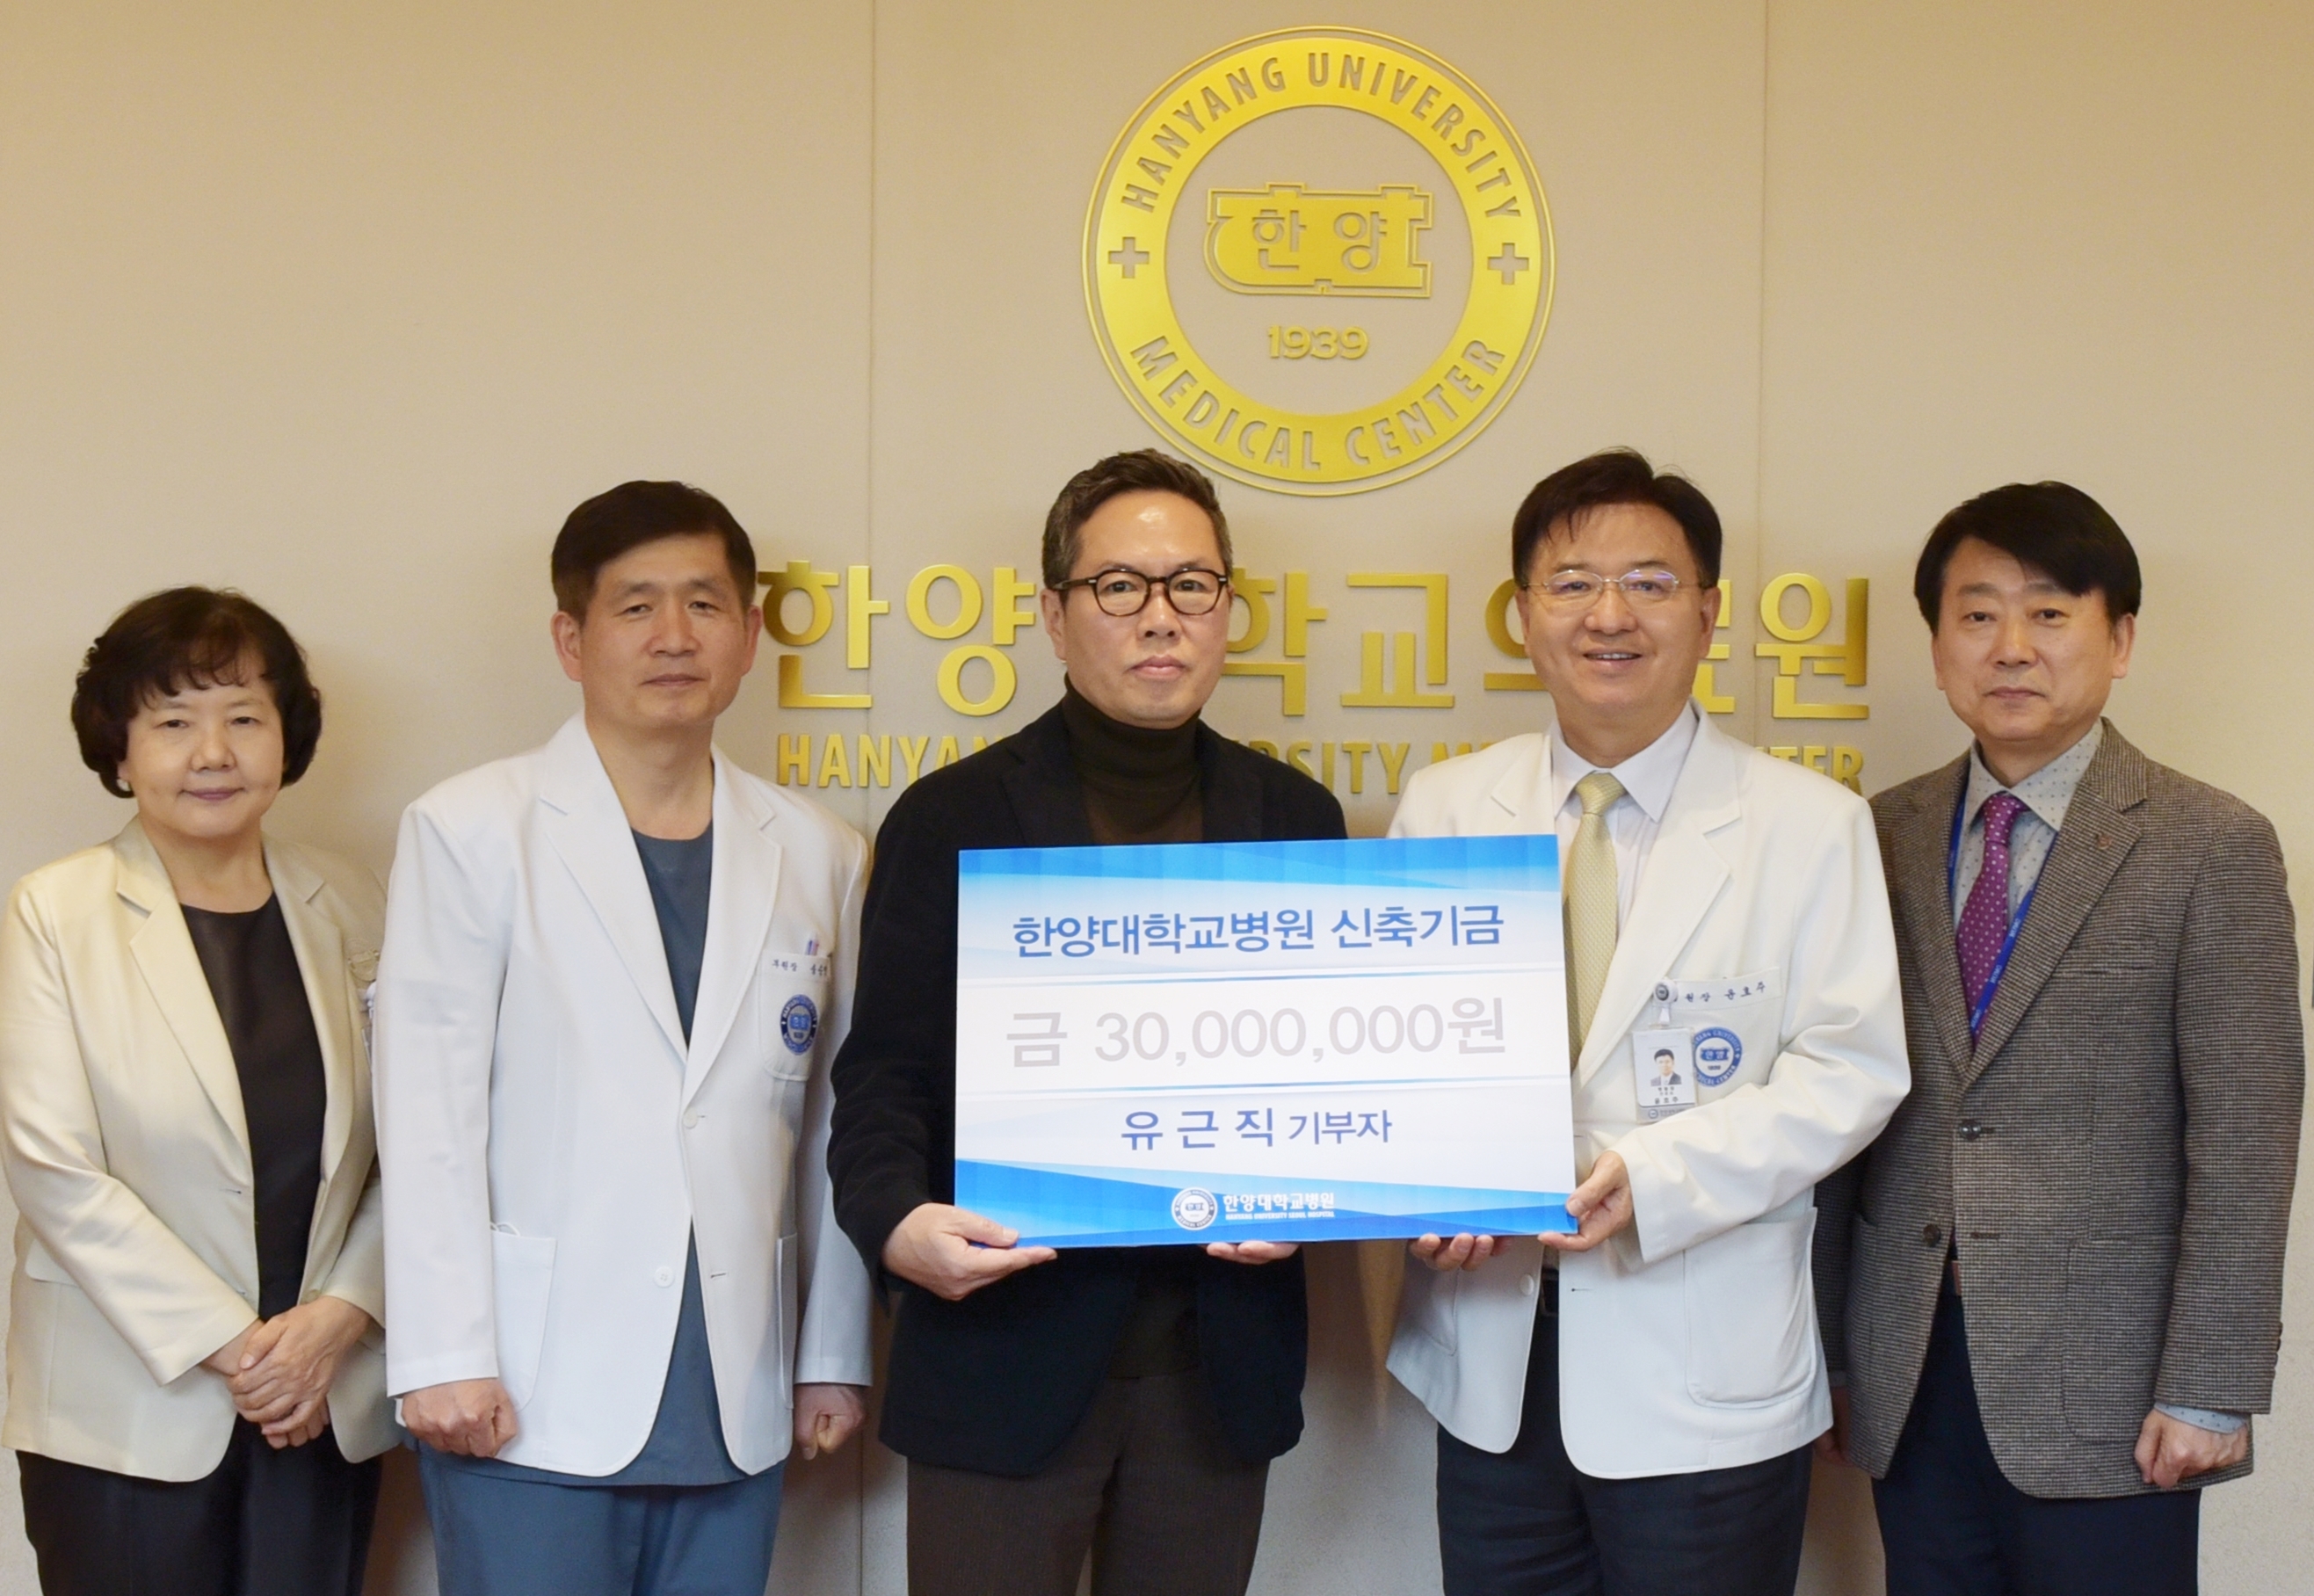 한양대학교병원 신축기금으로 유근직 기부자 3천만 원 기부